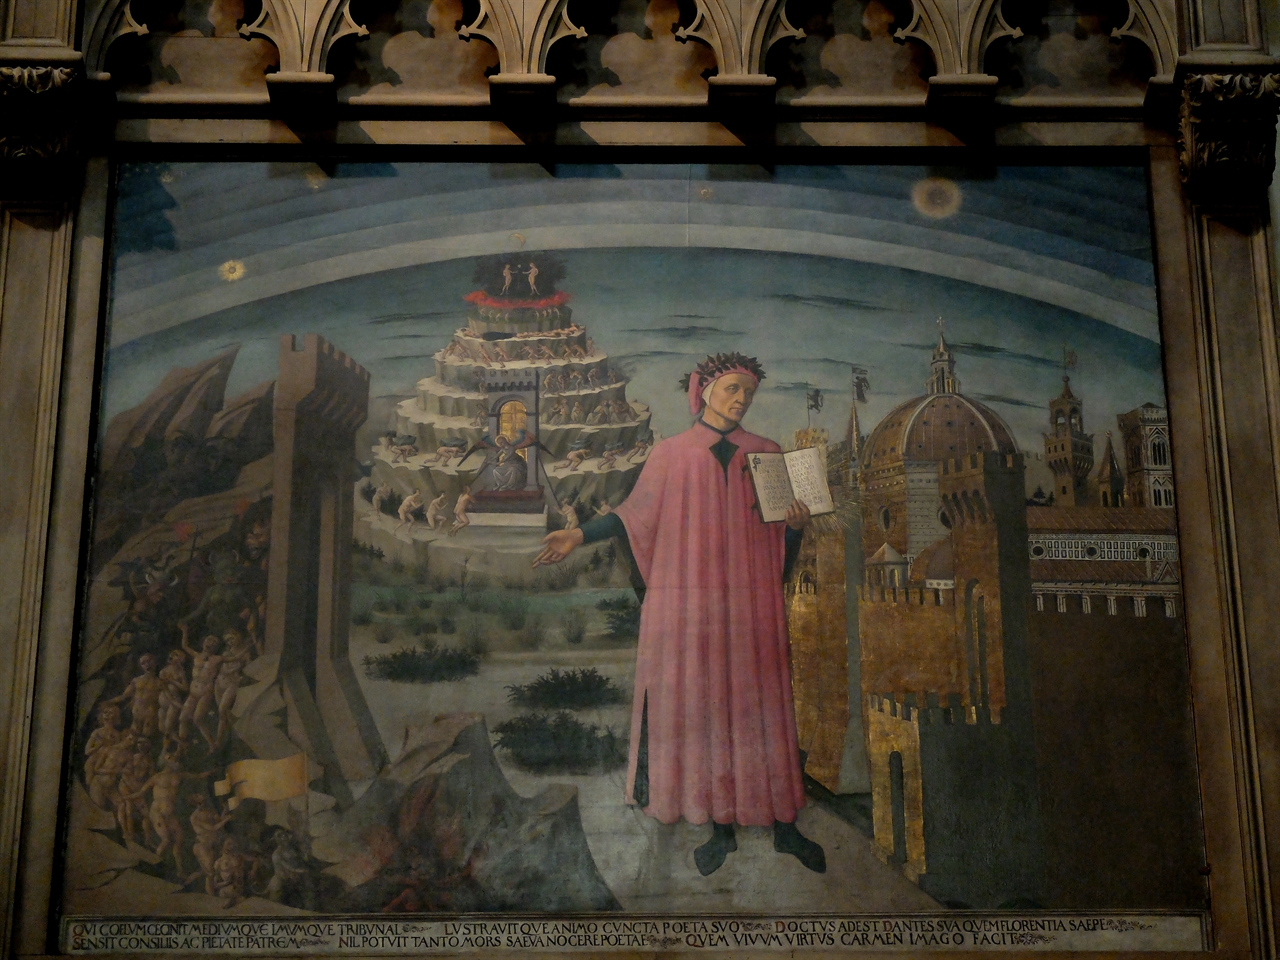 도메니코 디 미켈리노 ‘단테와 신곡’, 피렌체, 산타 마리아 델 피오레 성당. 자신은 볼 수 없었던 15세기 피렌체의 두오모를 배경으로 신곡을 들고 있는 단테의 모습입니다.